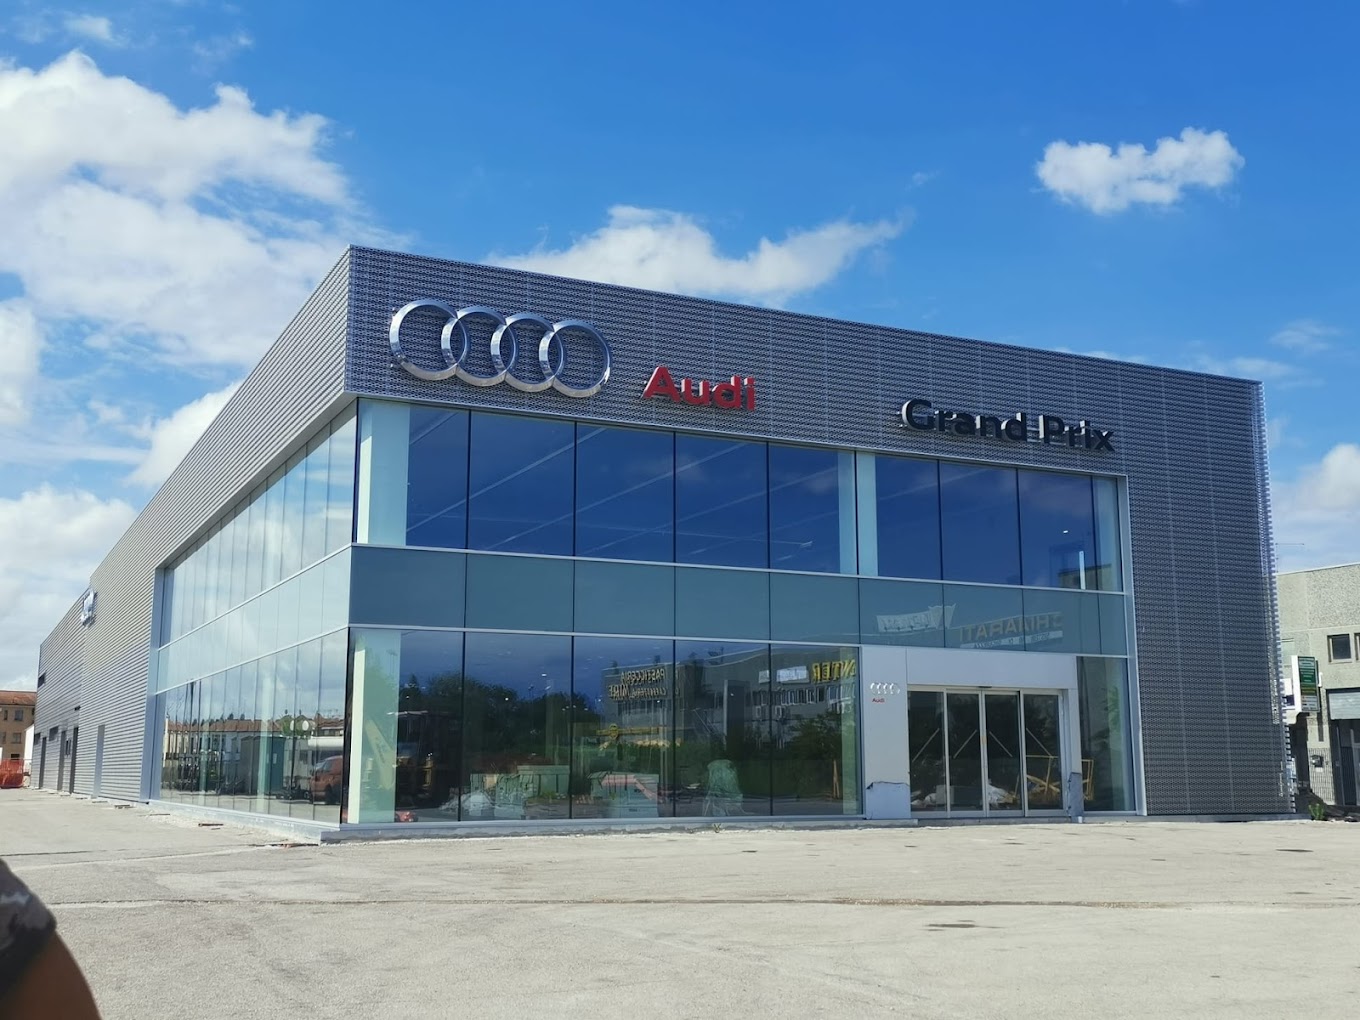 Grand Prix - Audi Ferrara